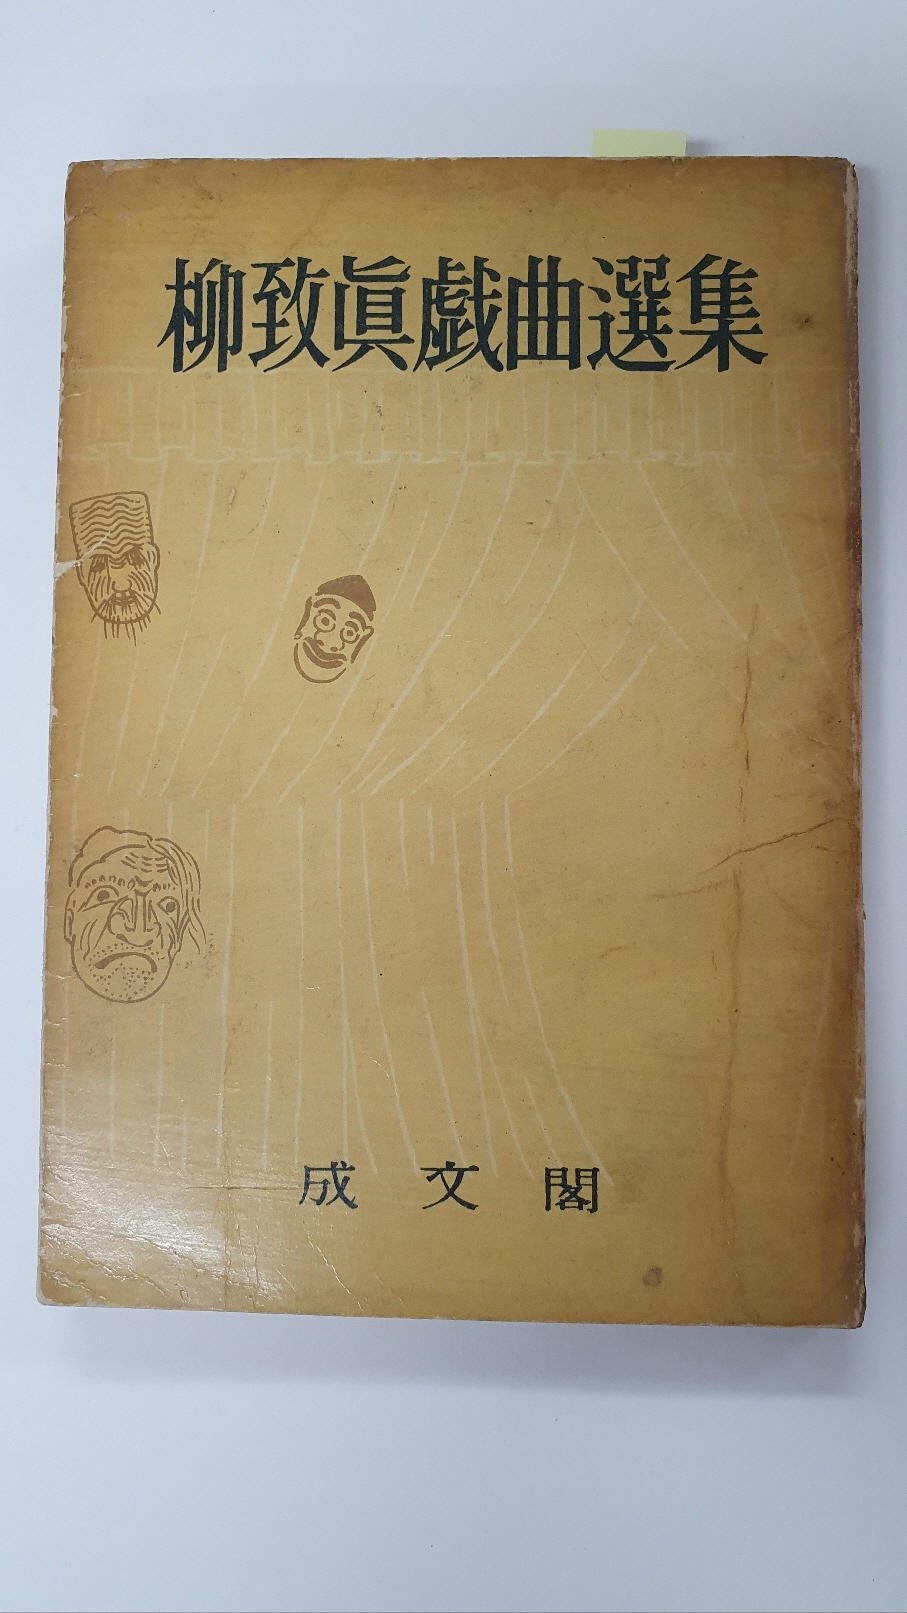 유치진희곡선집, 1959 초판 저자서명본